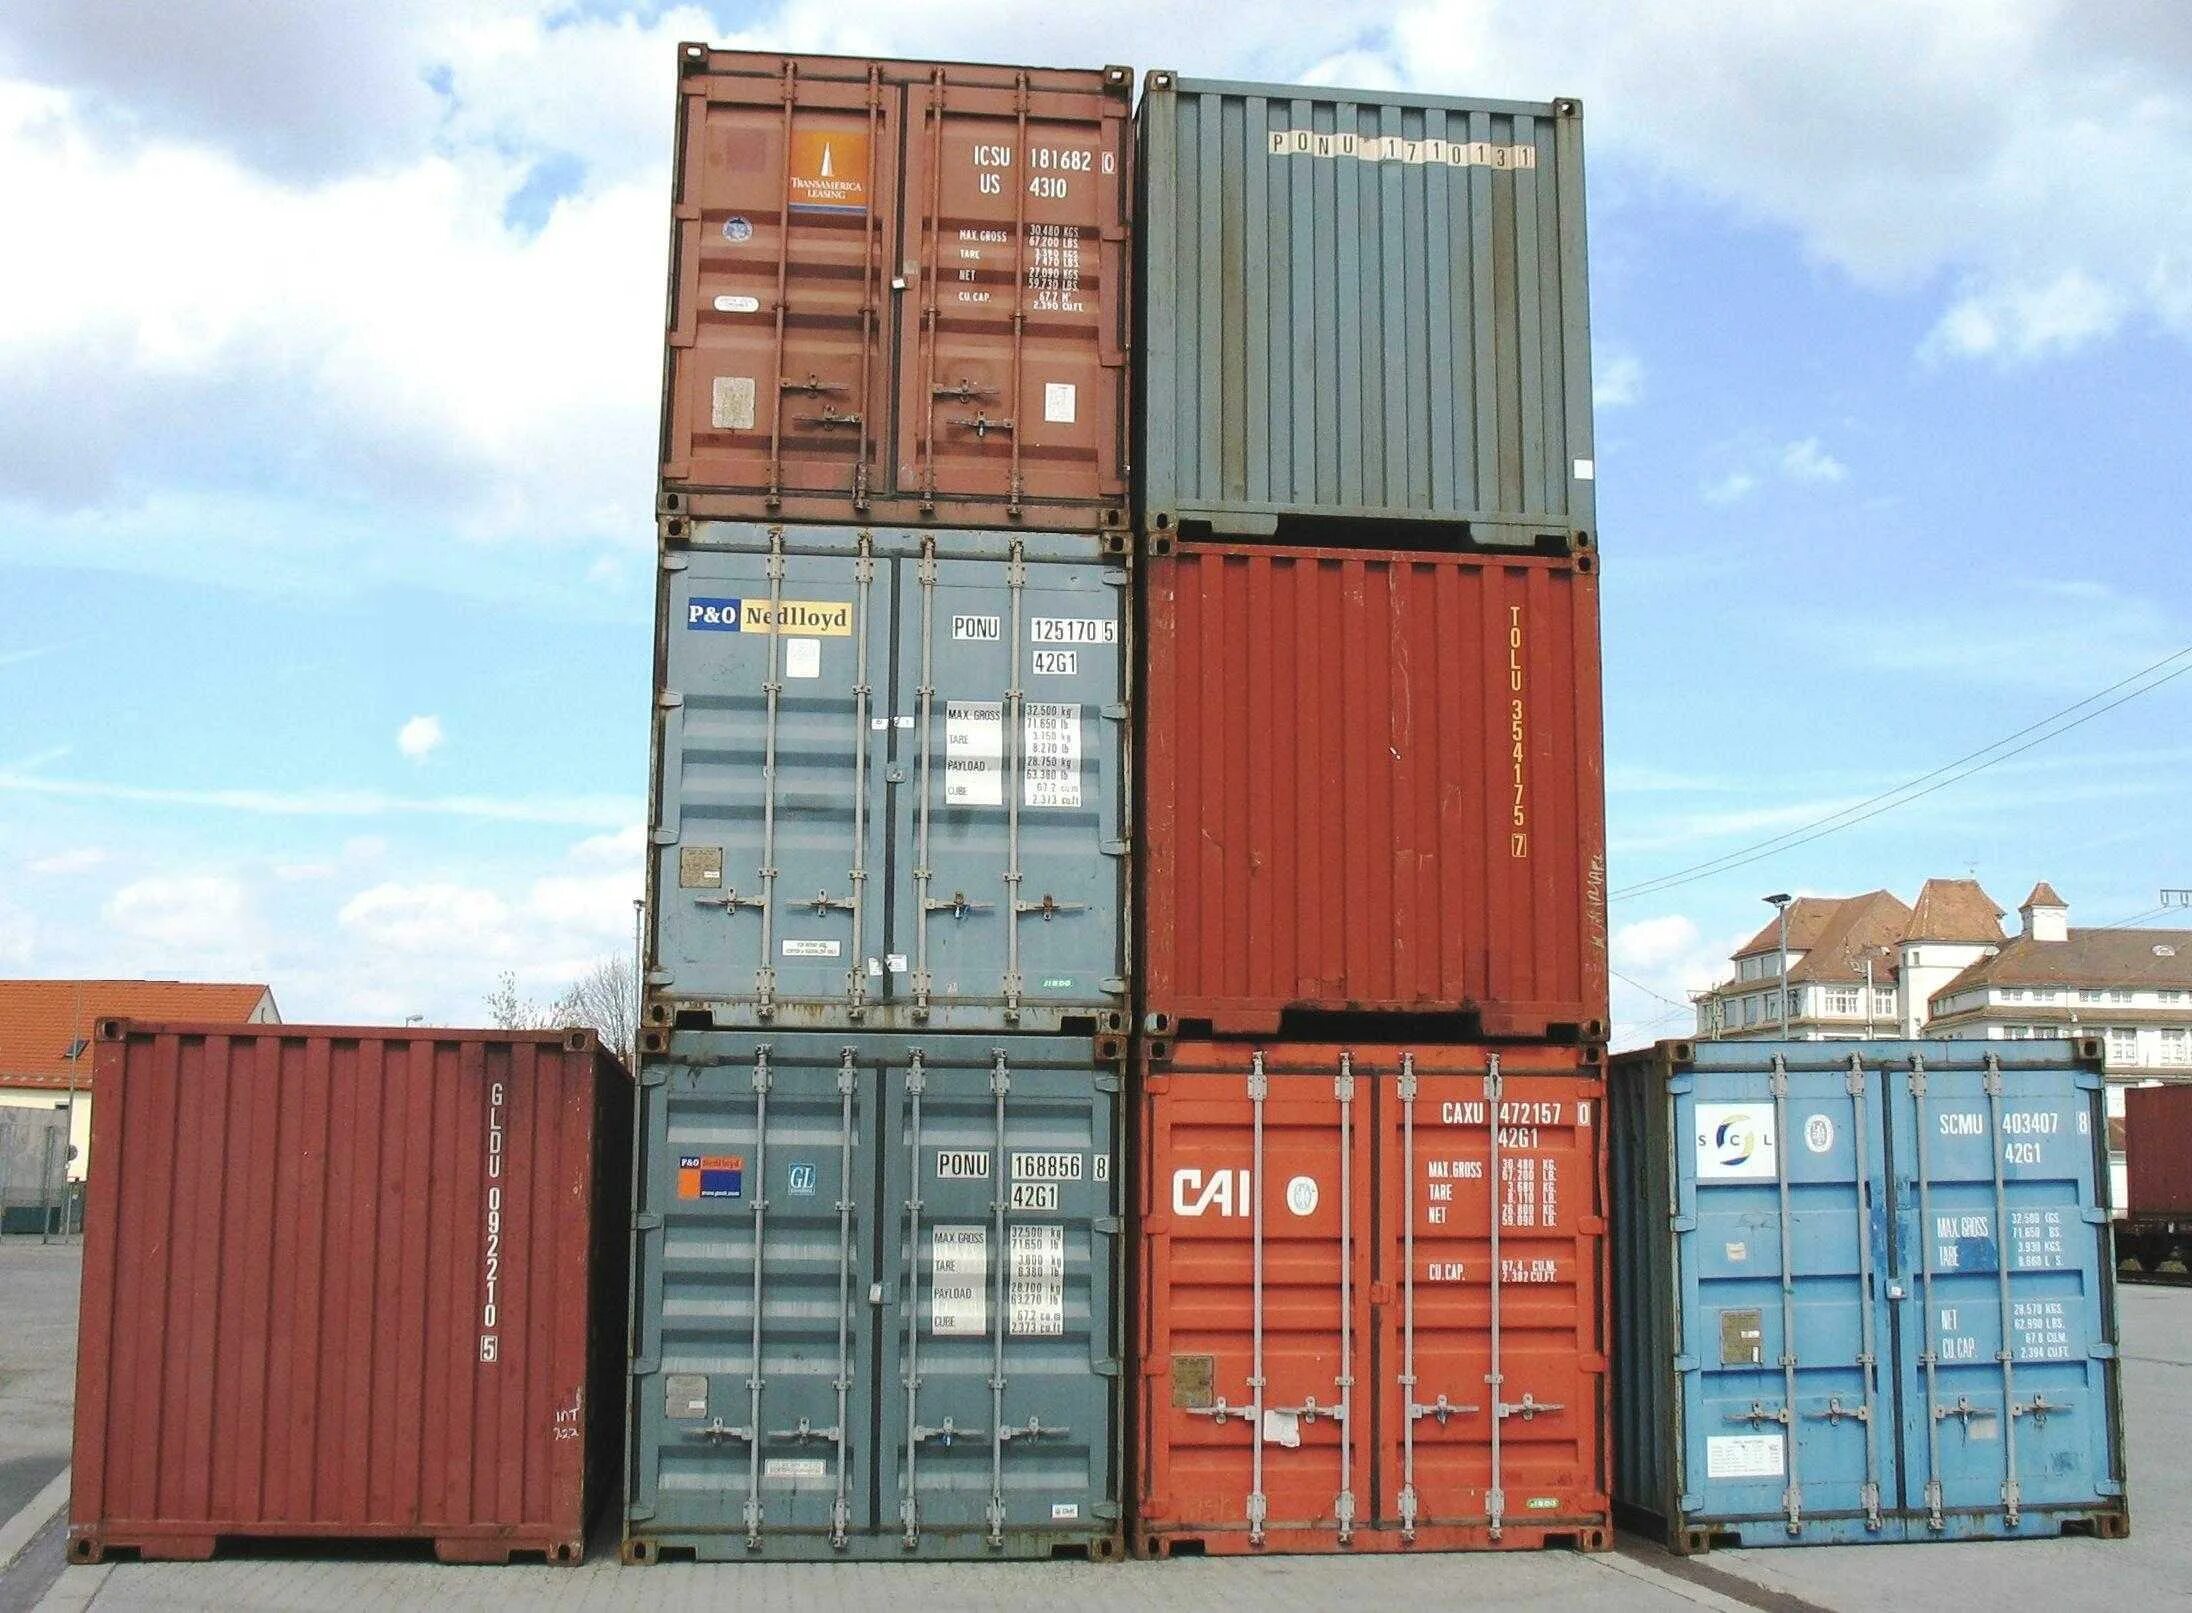 Включи контейнер 2. Платформа контейнер ISO 6346. Детали каркаса контейнера ISO 6346. Рама контейнера ISO 6346. Лестница доступа в контейнер 2.8.